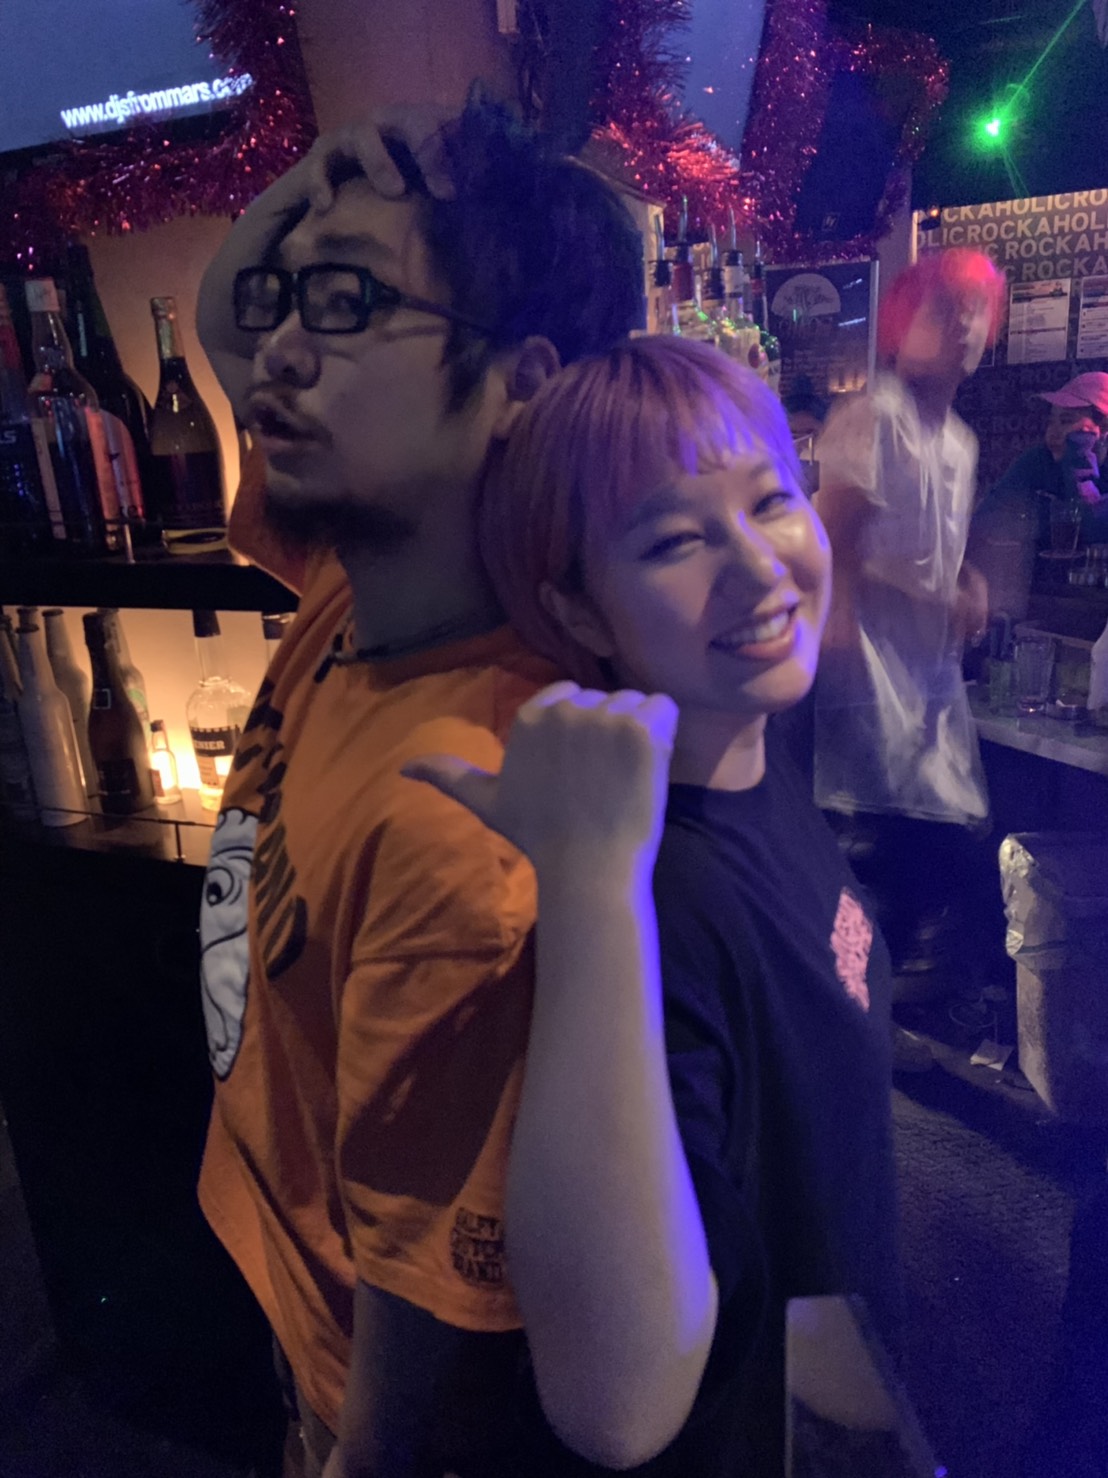 https://bar-rockaholic.jp/shibuya/blog/S__7020585.jpg